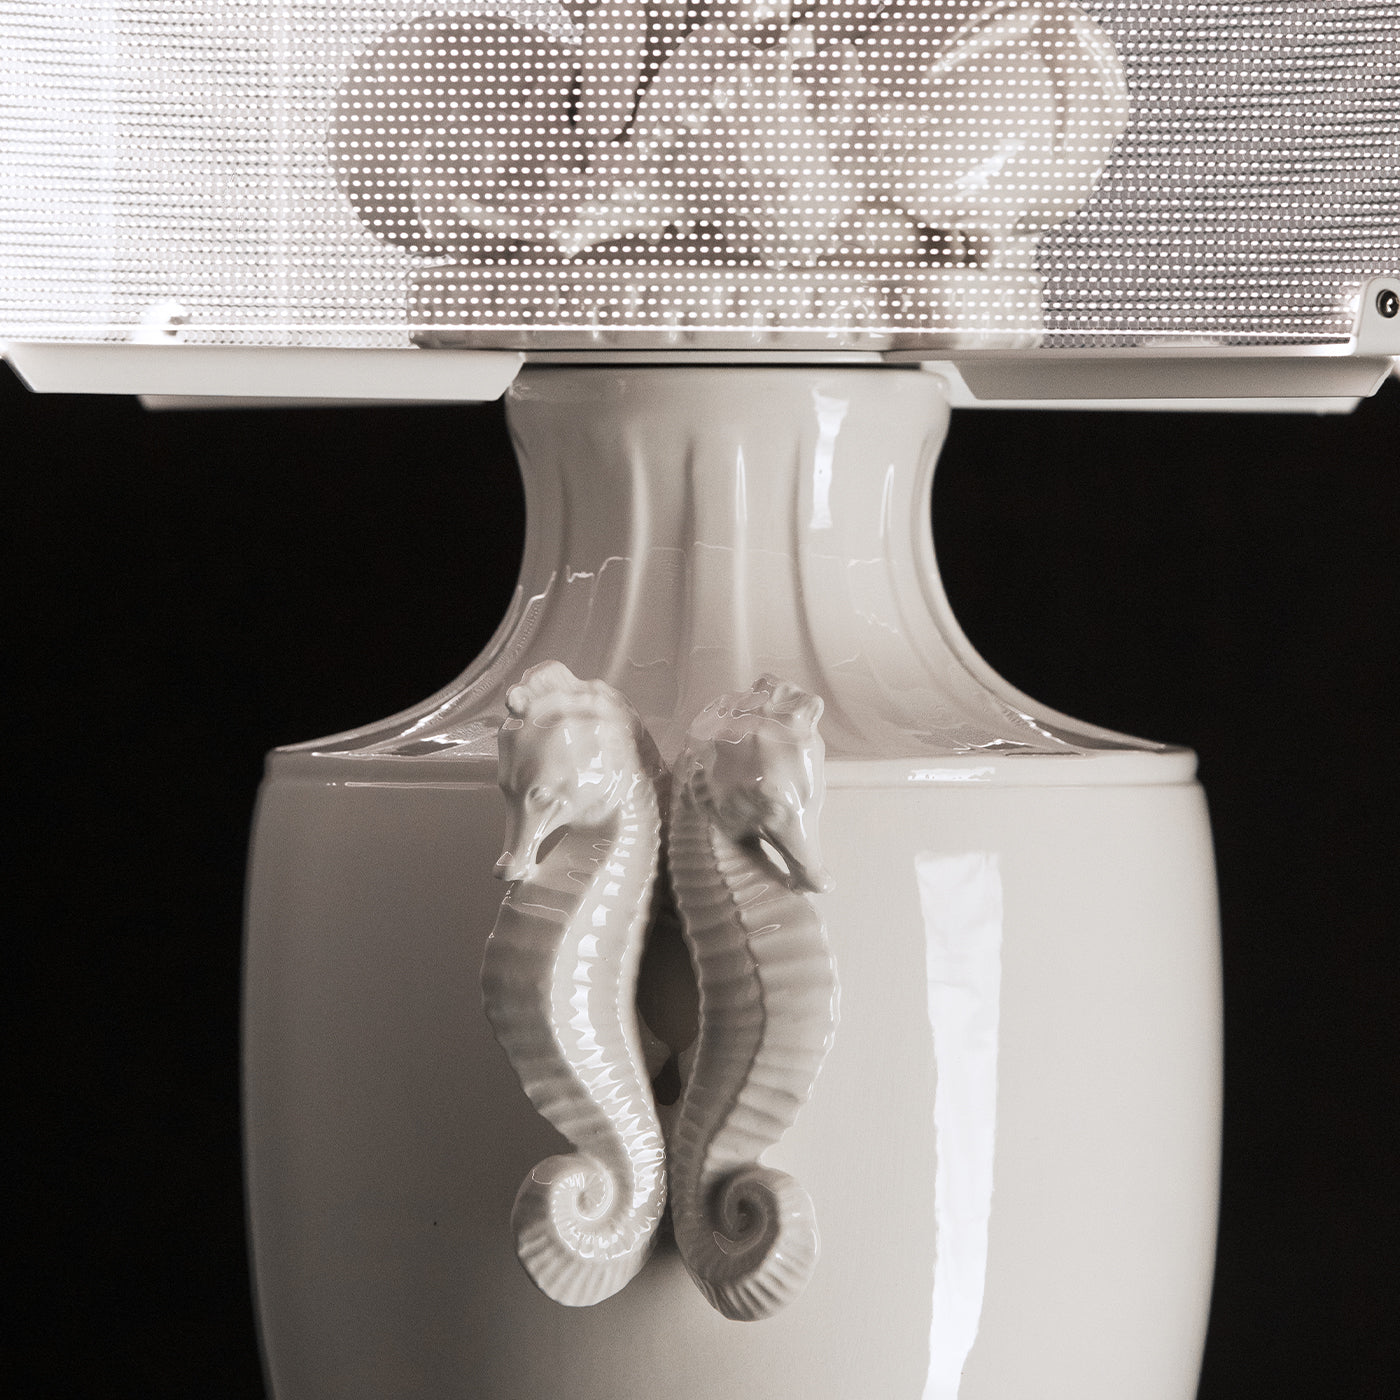 Okeanos White Table Lamp - Alternative view 1